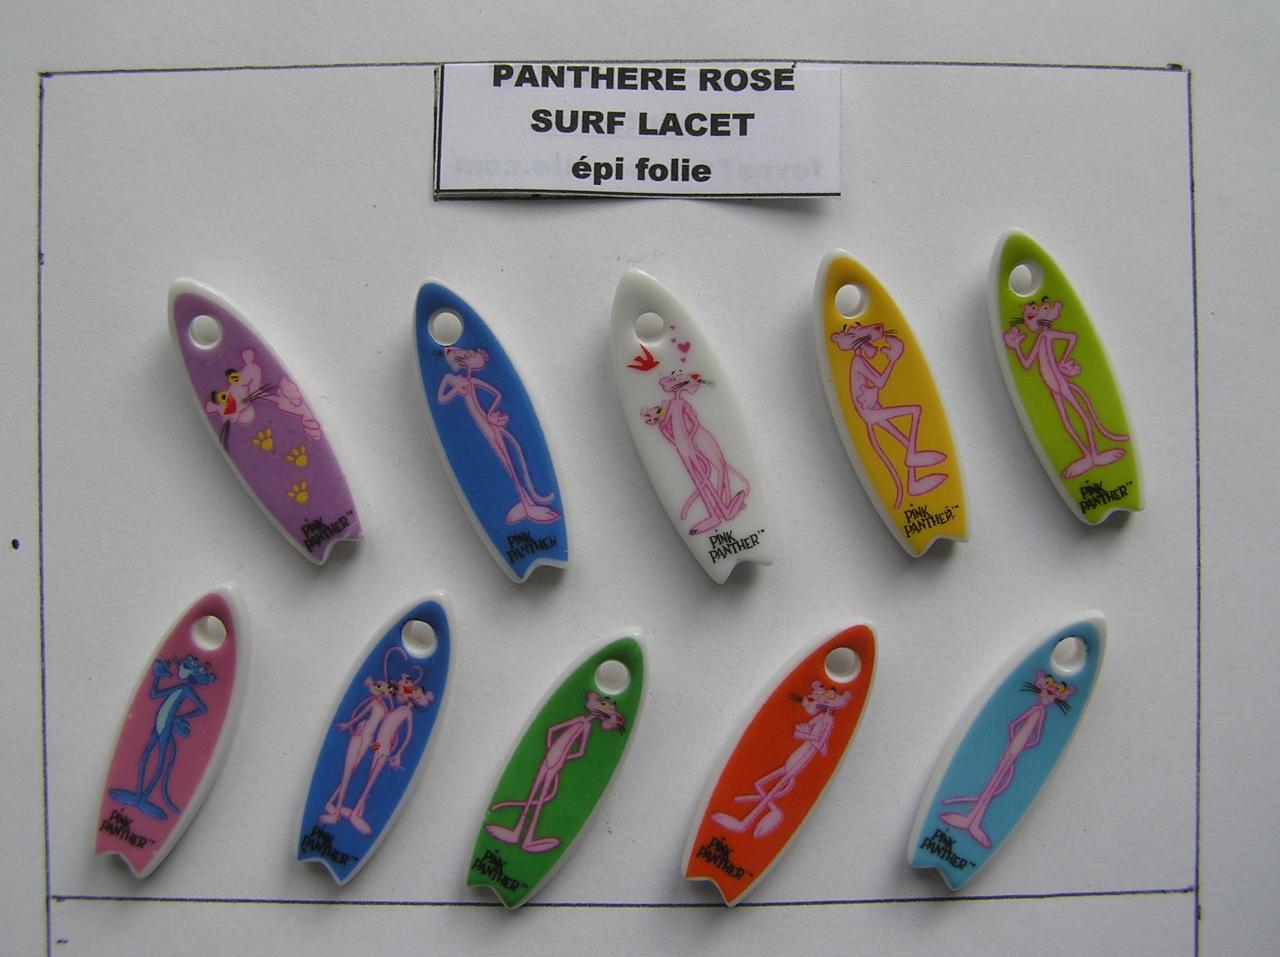 U 10 / PANTHERE ROSE SURF lacet / épuisée / AFF 06.2015